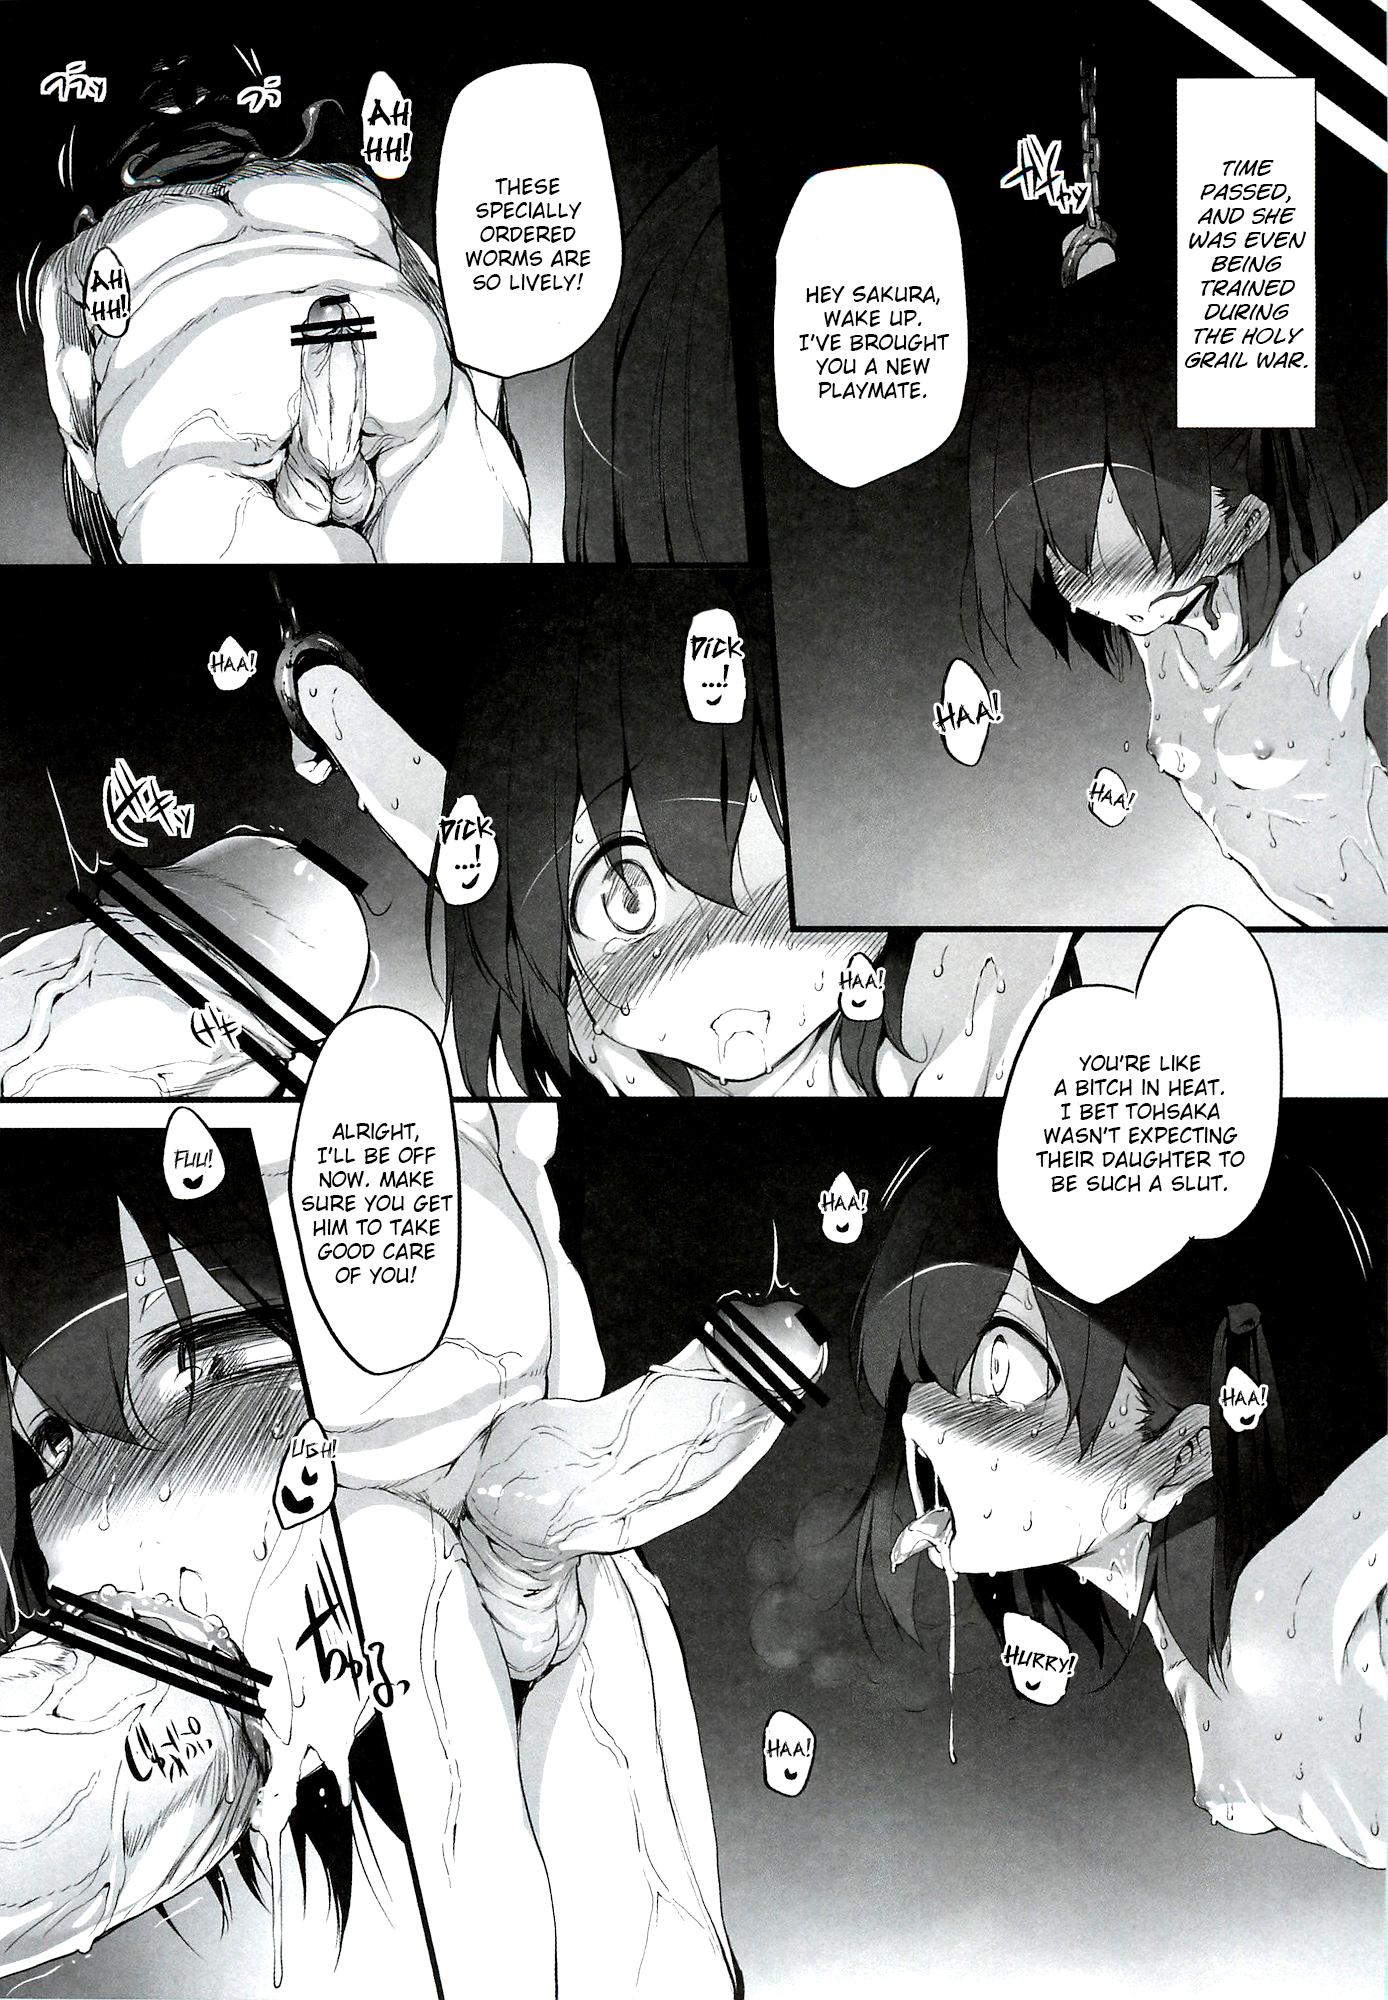 Cavalgando Immoral/Zero - Fate zero Chica - Page 12